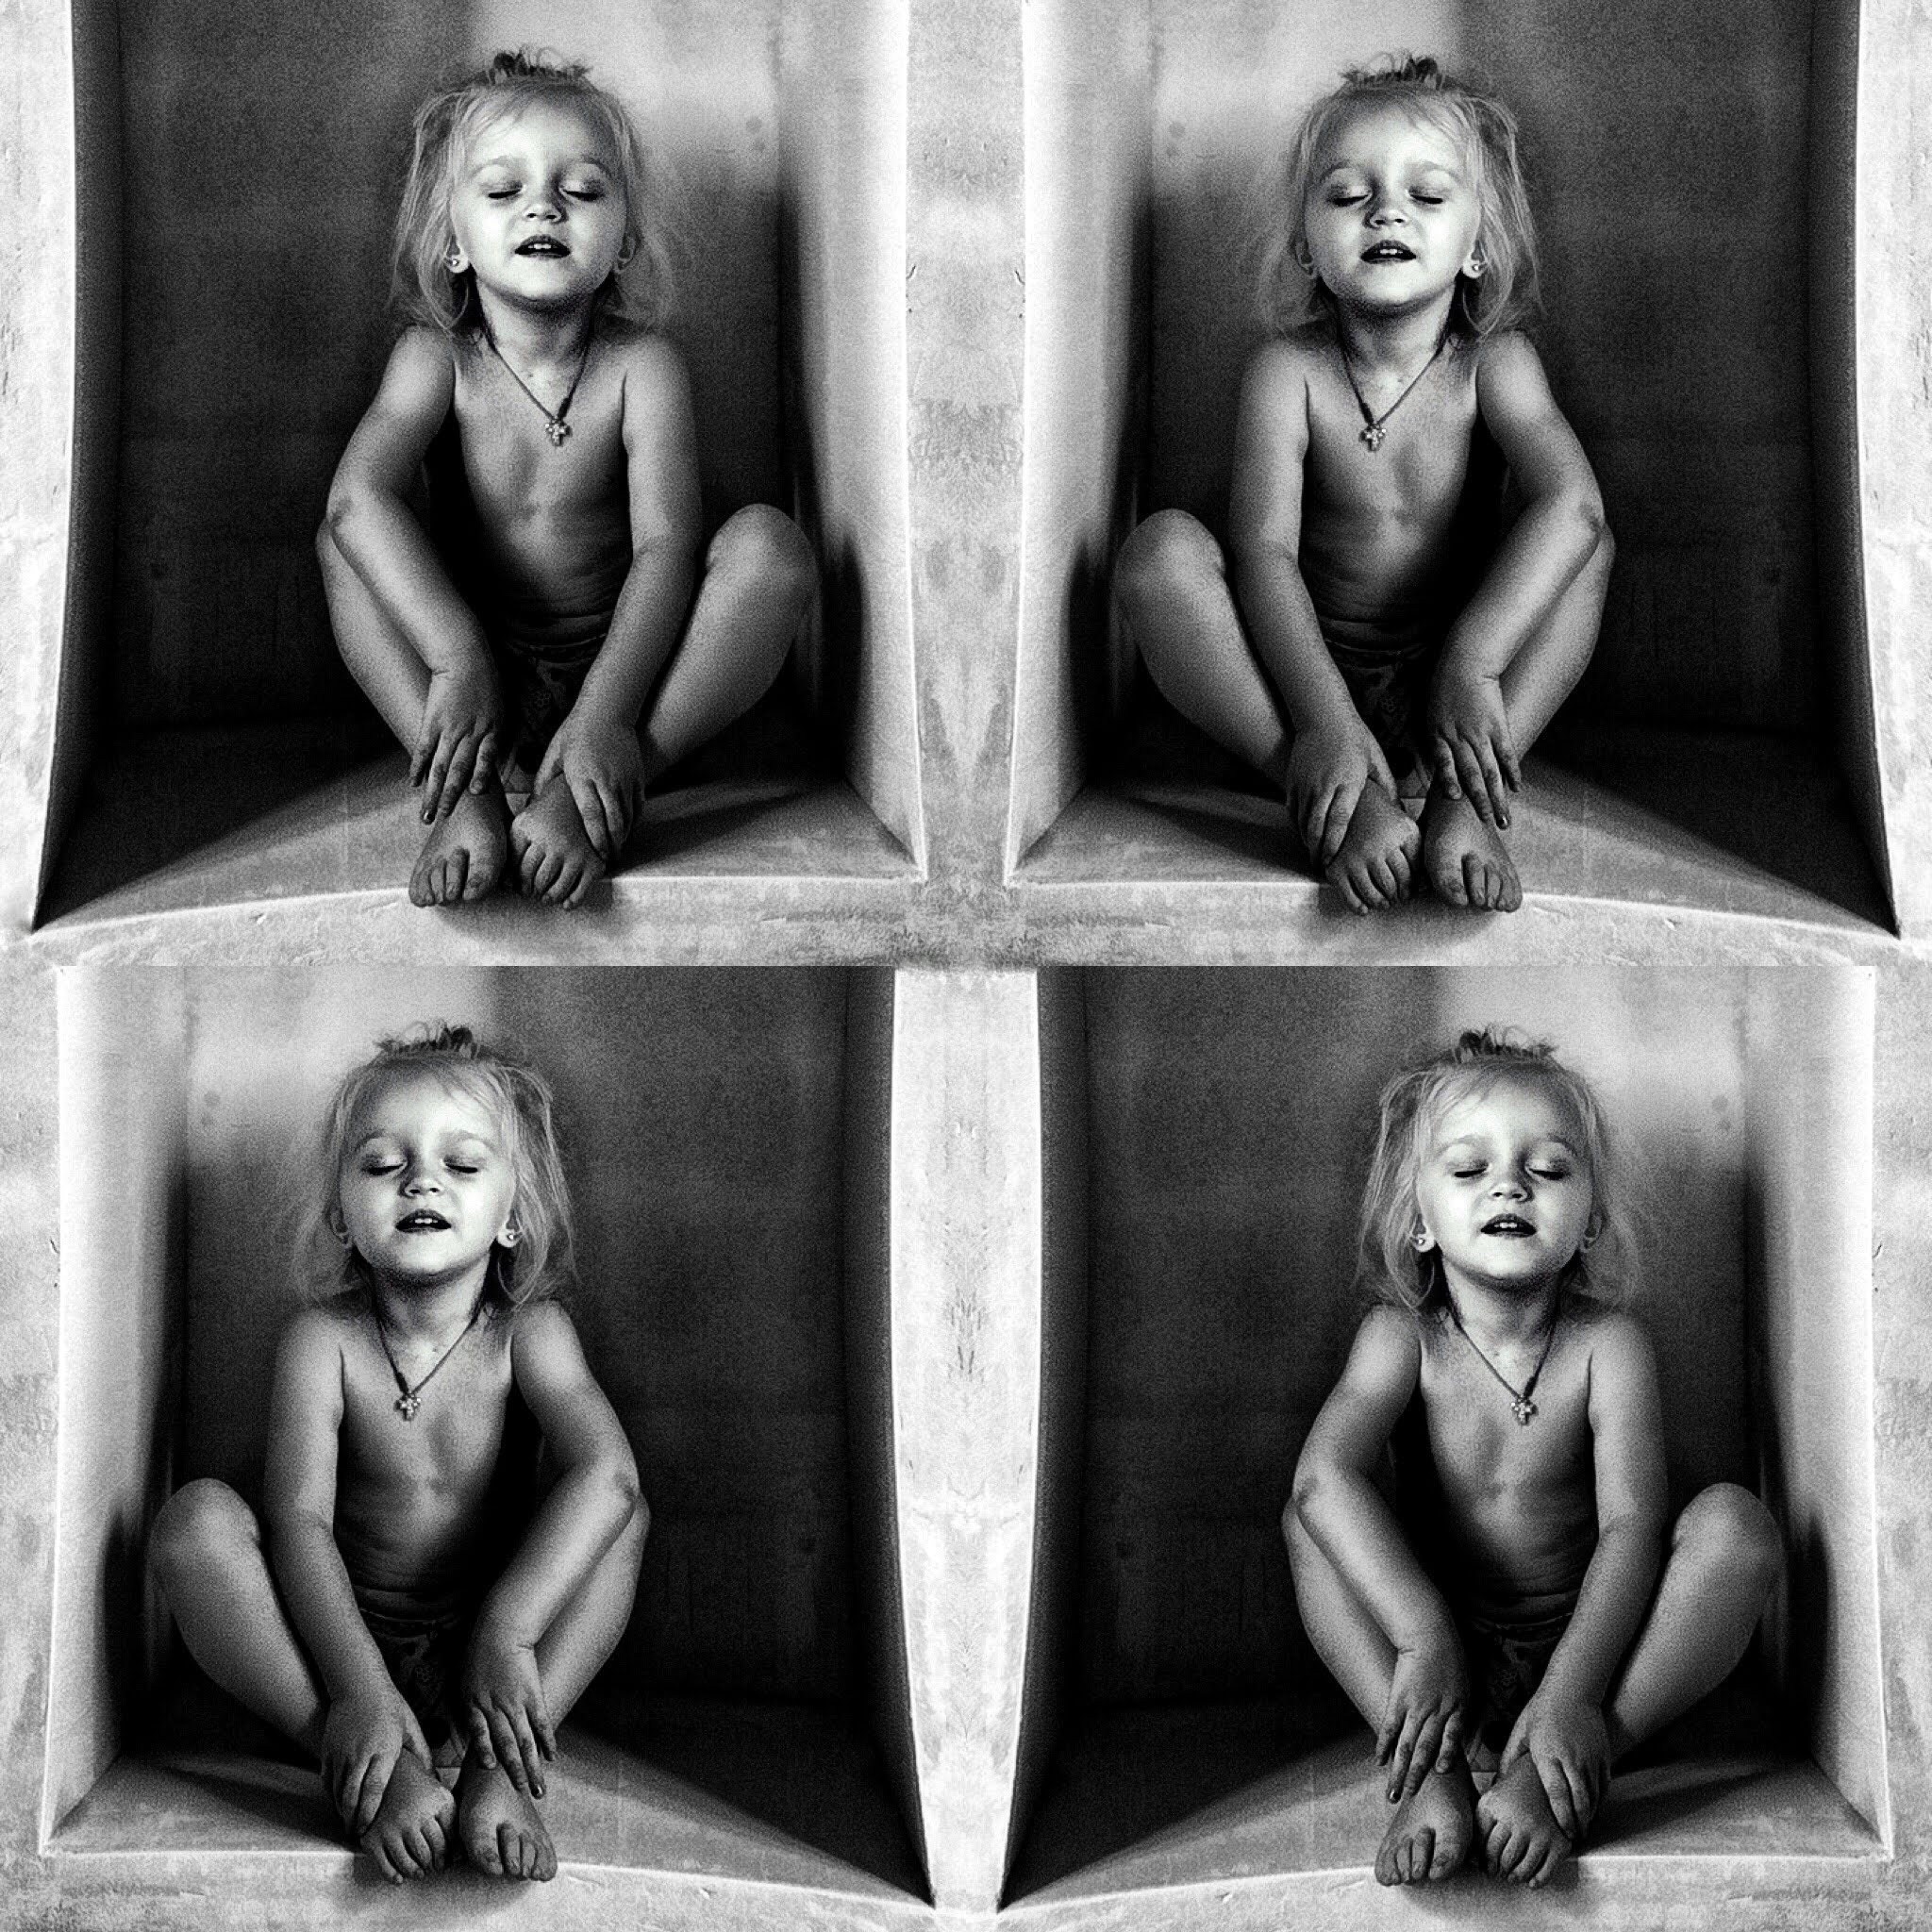 Загадочное детство, арт, концепт, портрет, чб, childhood, portrait, bnw, bw, blackandwhite, conceptually, Сергей Гойшик